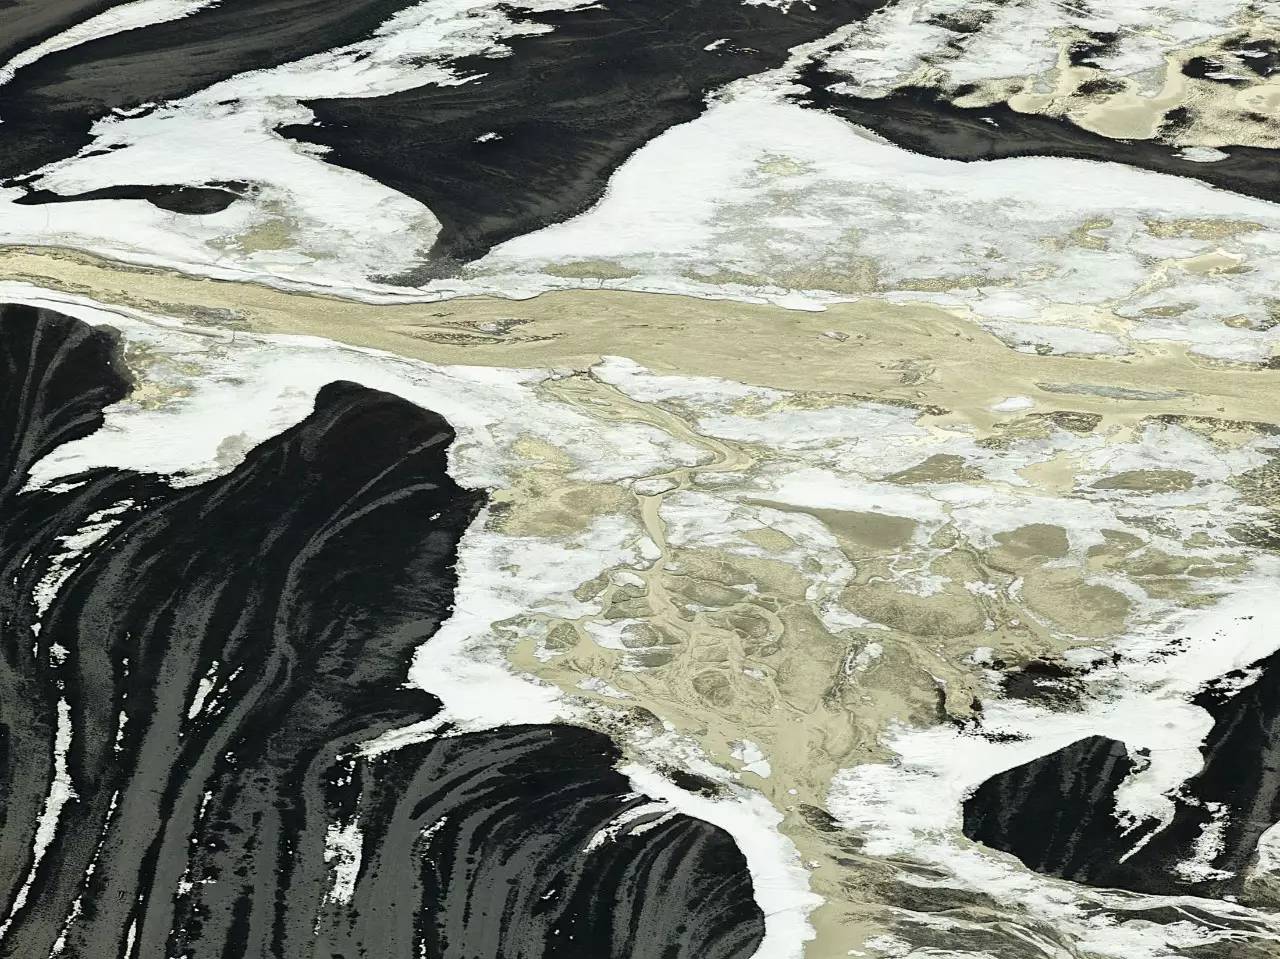 前所未见:北极冰川融化的震撼景象 |图辑